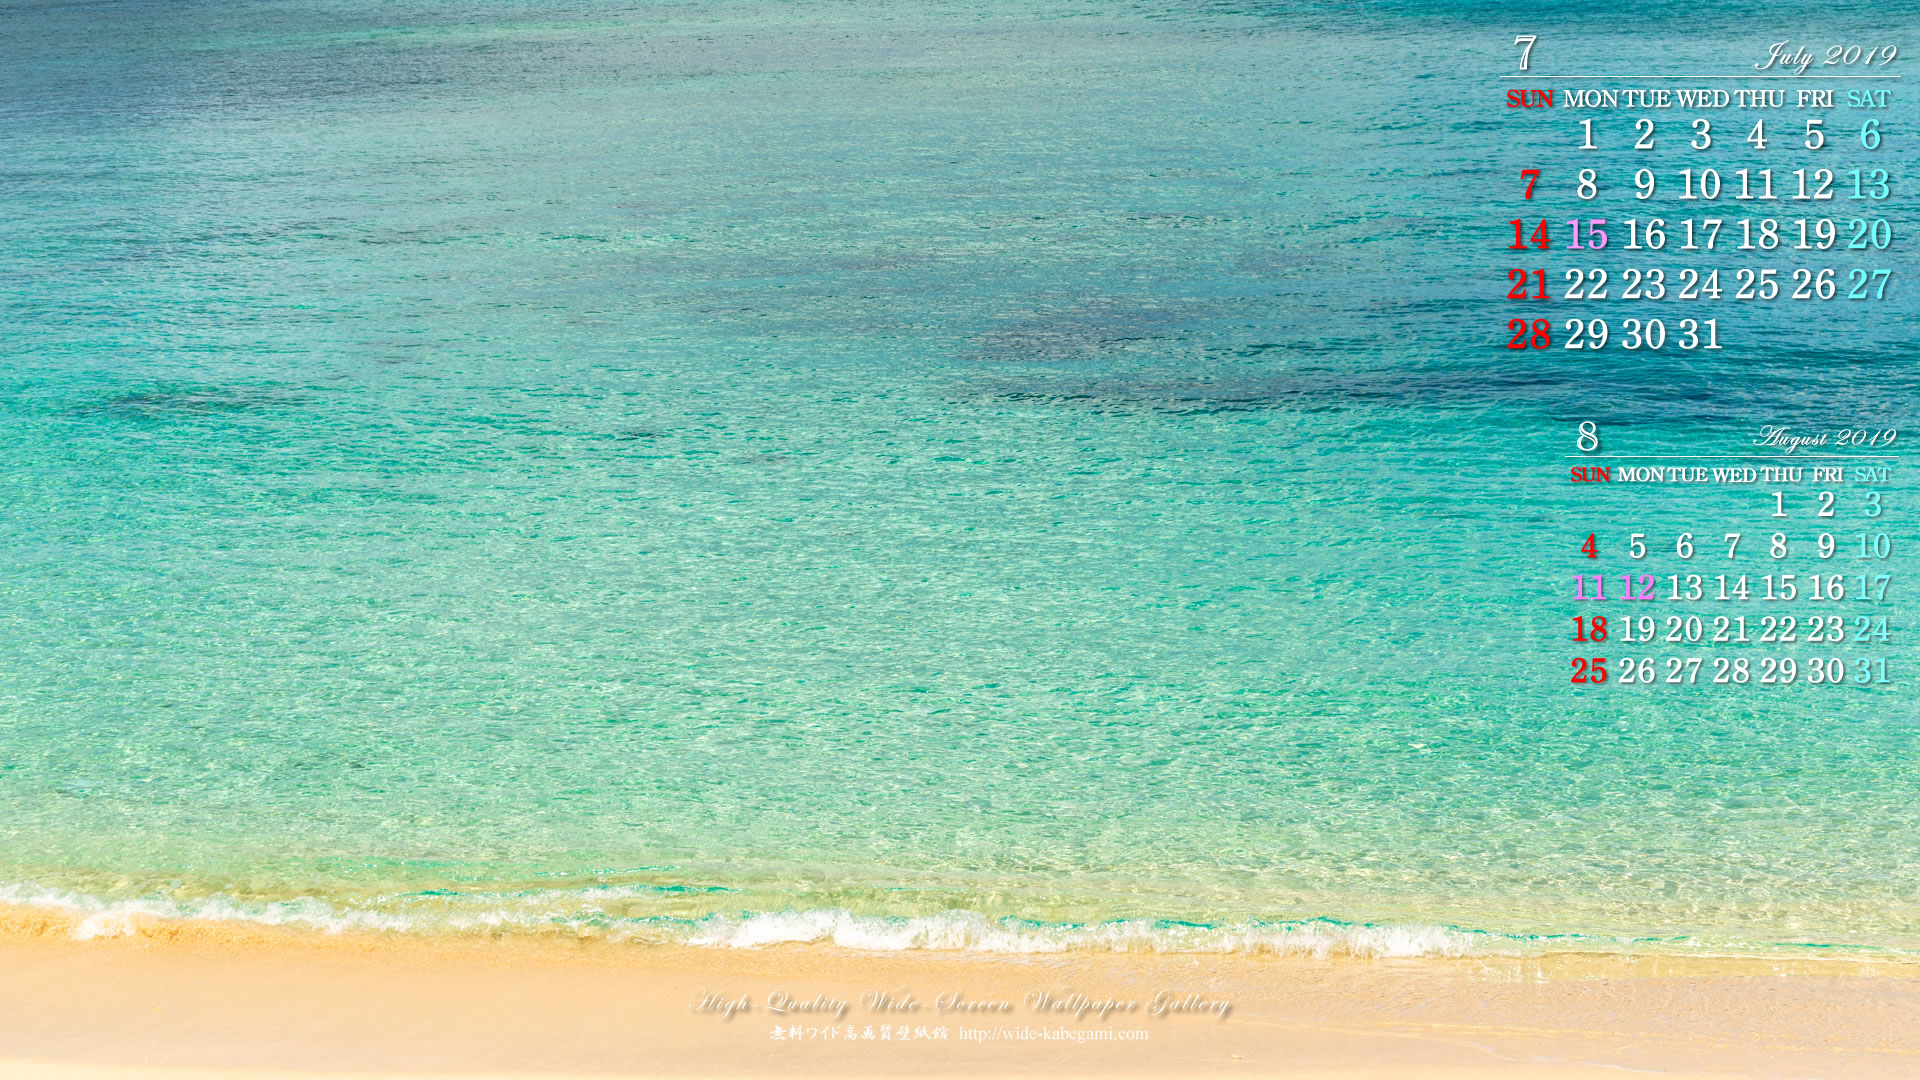 19年7月のカレンダー壁紙 19x1080 青緑色のビーチ 無料ワイド高画質壁紙館